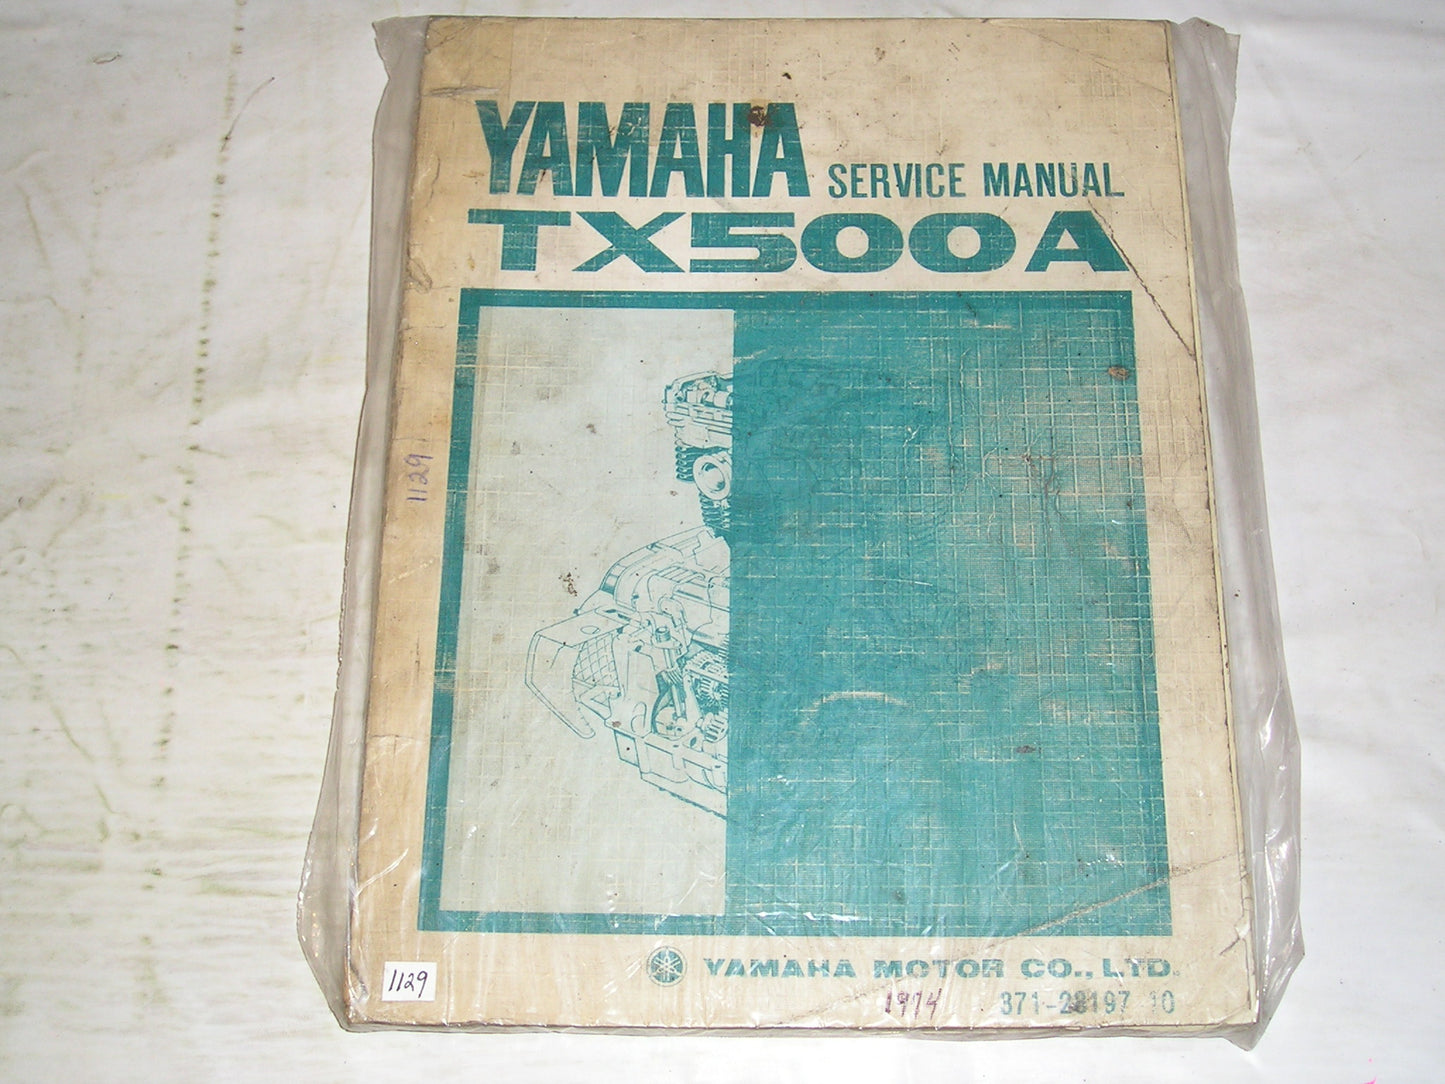 YAMAHA TX500A  TX500 A  1974  Service Manual  371-28197-10  LIT-11613-71-01  #1129